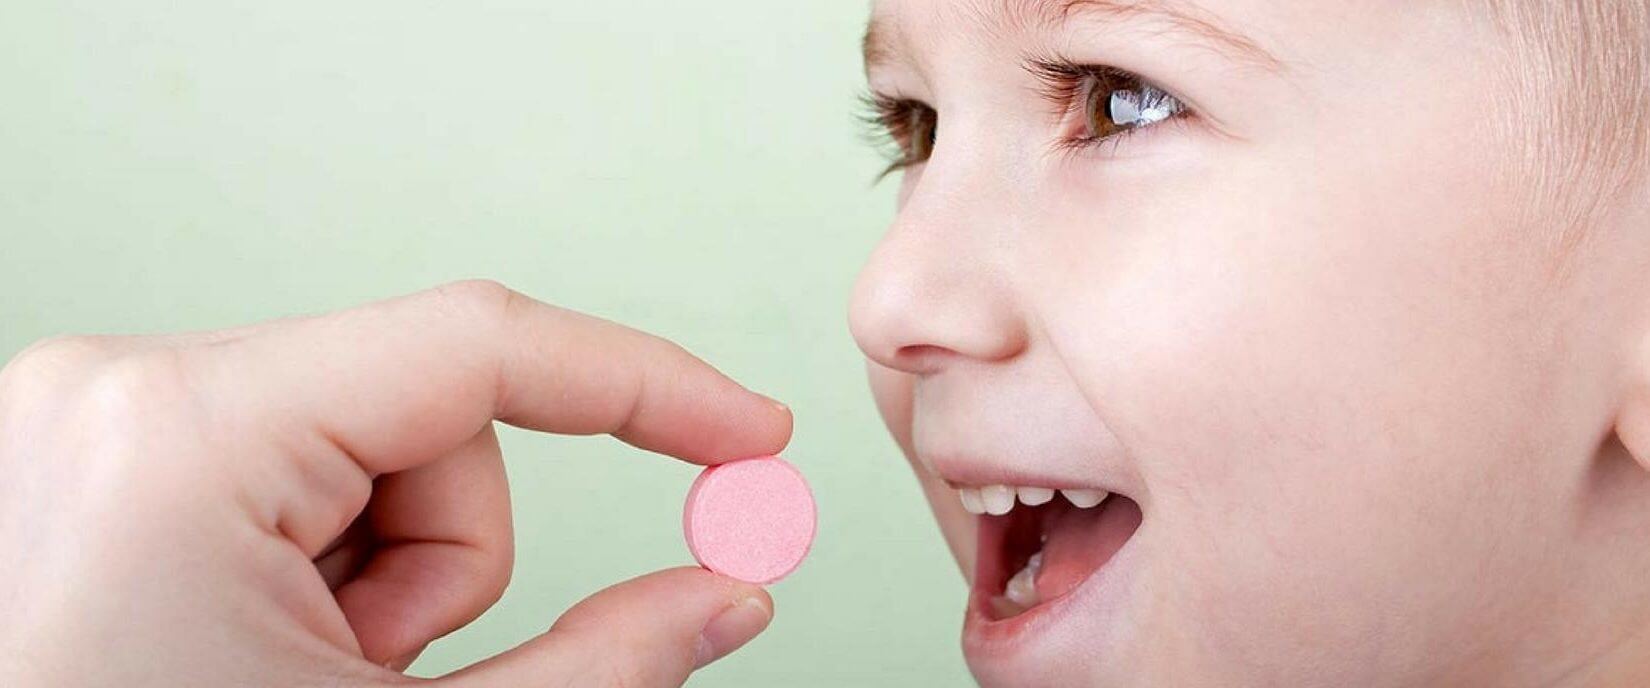 Κορονοϊός- έρευνα: Το φάρμακο που βοηθά τα παιδιά όταν περνούν σοβαρή λοίμωξη